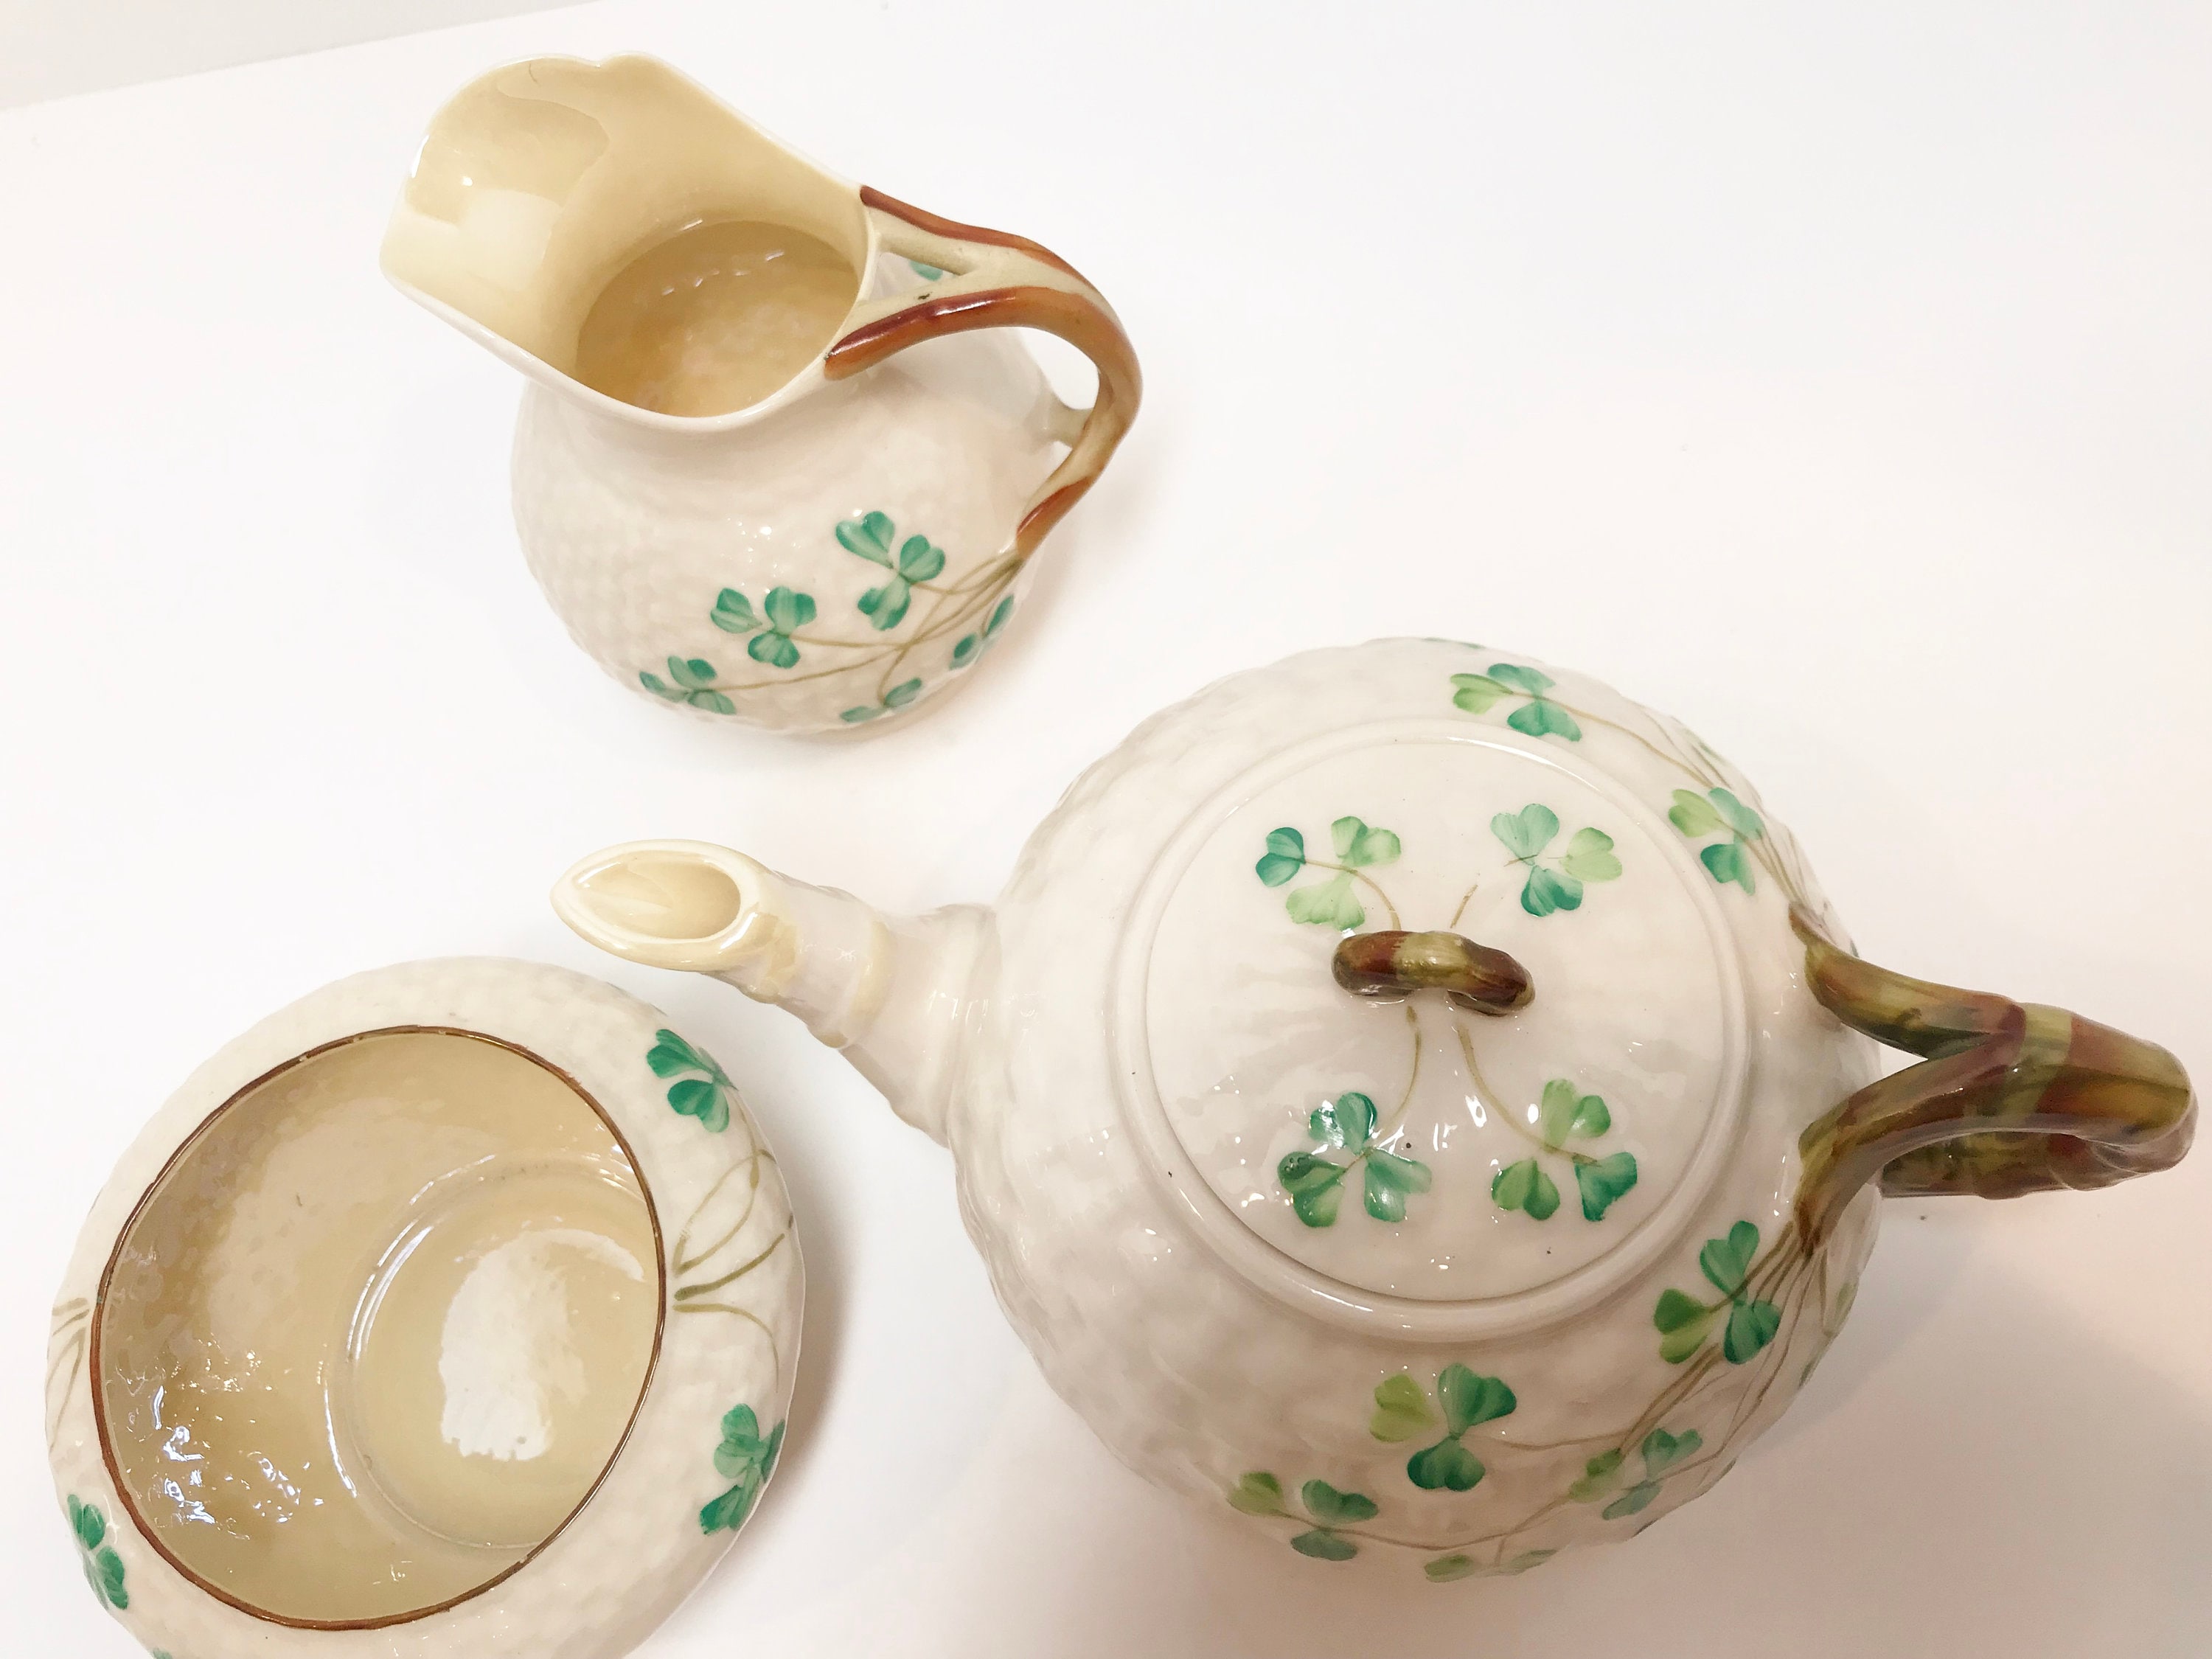 Shamrock Small Teapot - Bewley Irish Imports